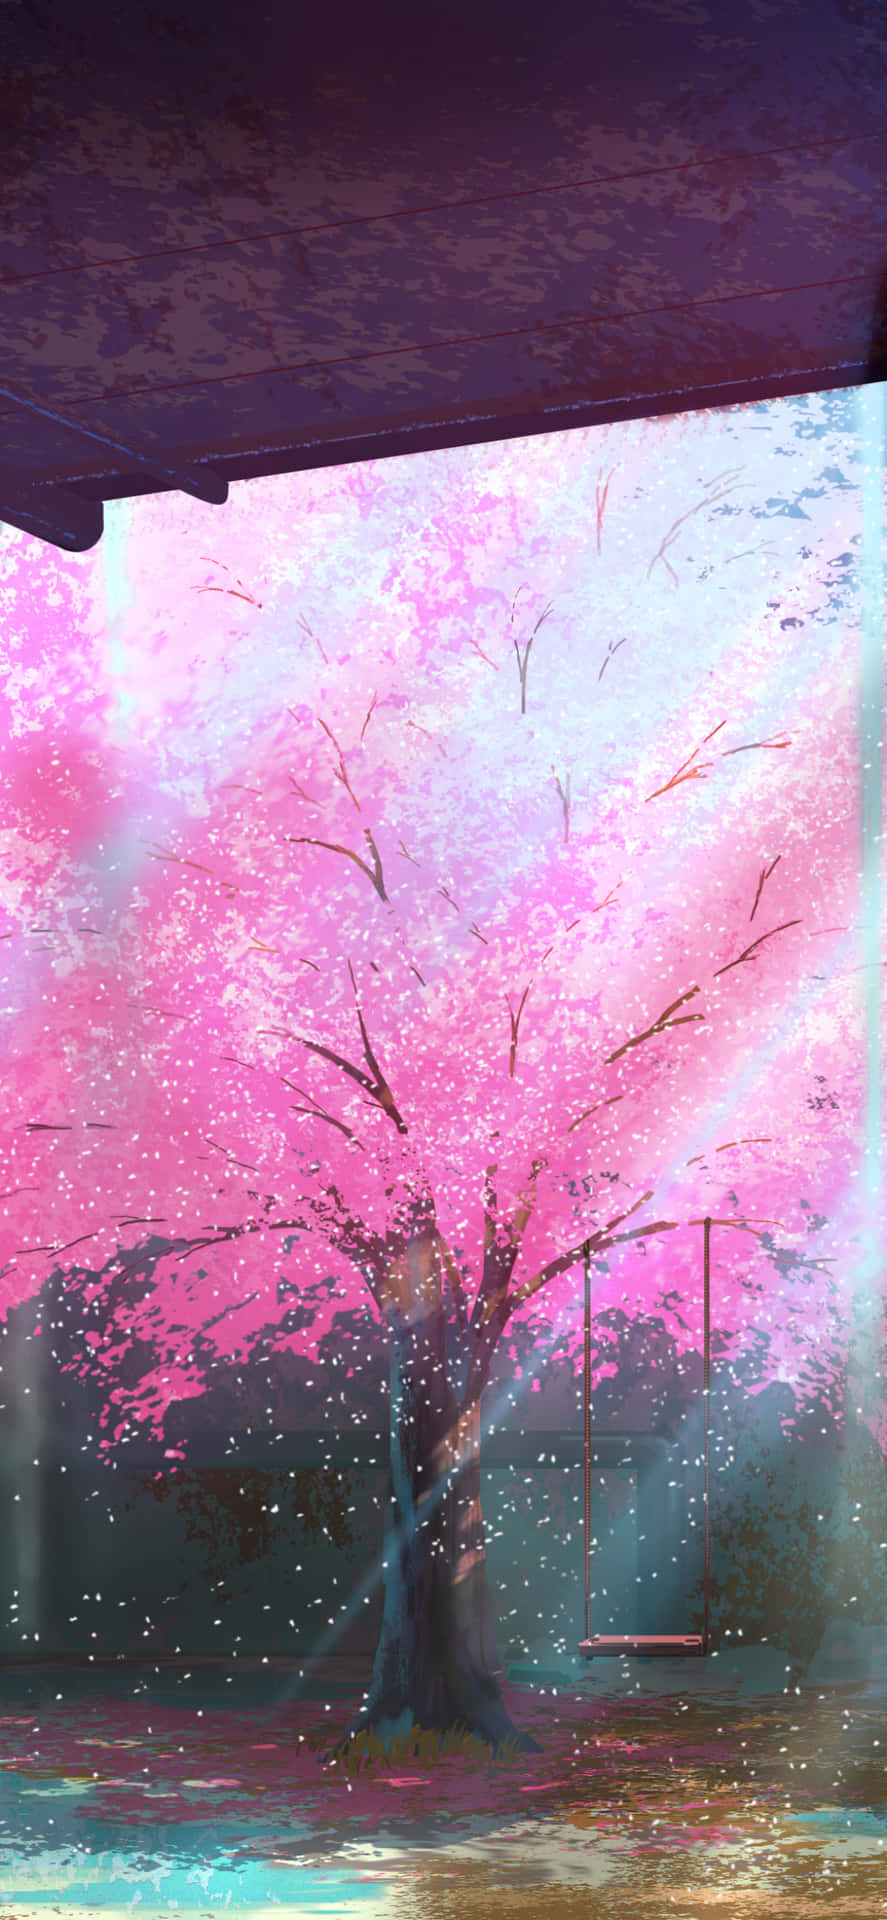 Ettrosa Körsbärsträd I Full Blom. Wallpaper